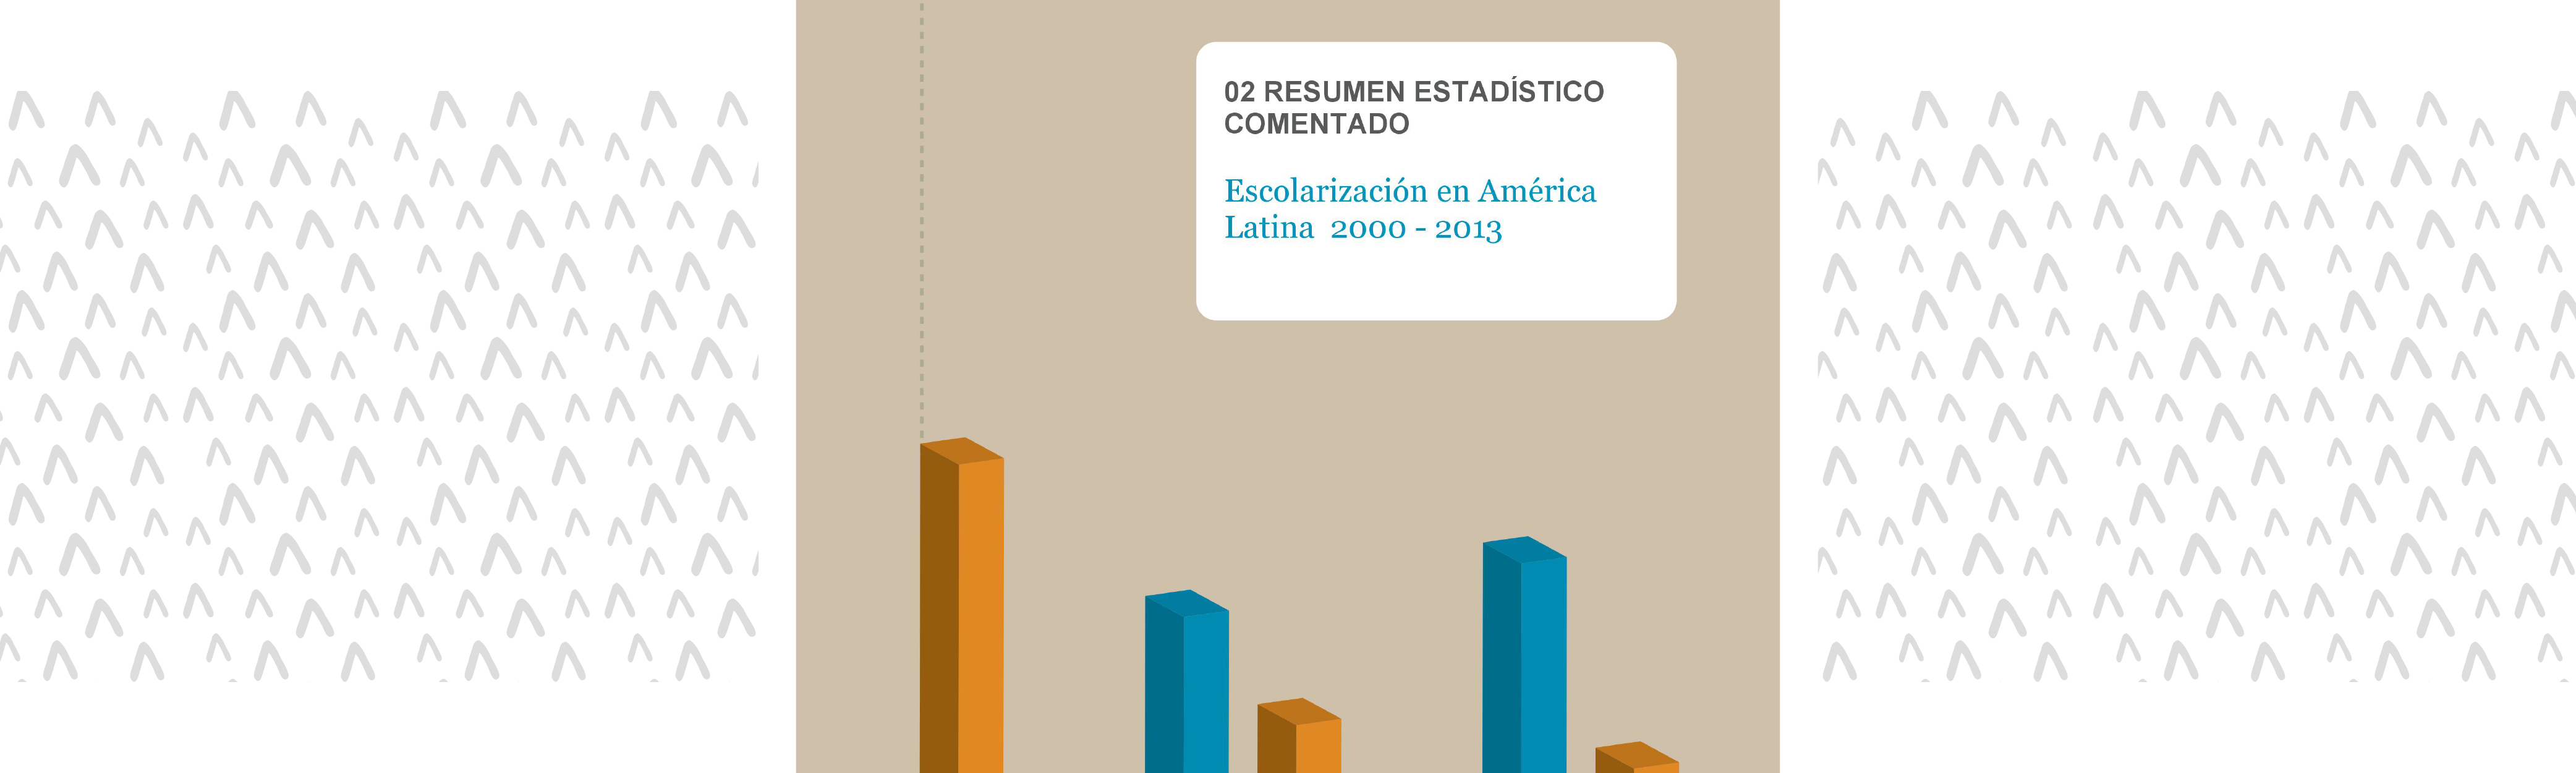 	Escolarización en América Latina 2000 - 2013. Resumen estadístico comentado